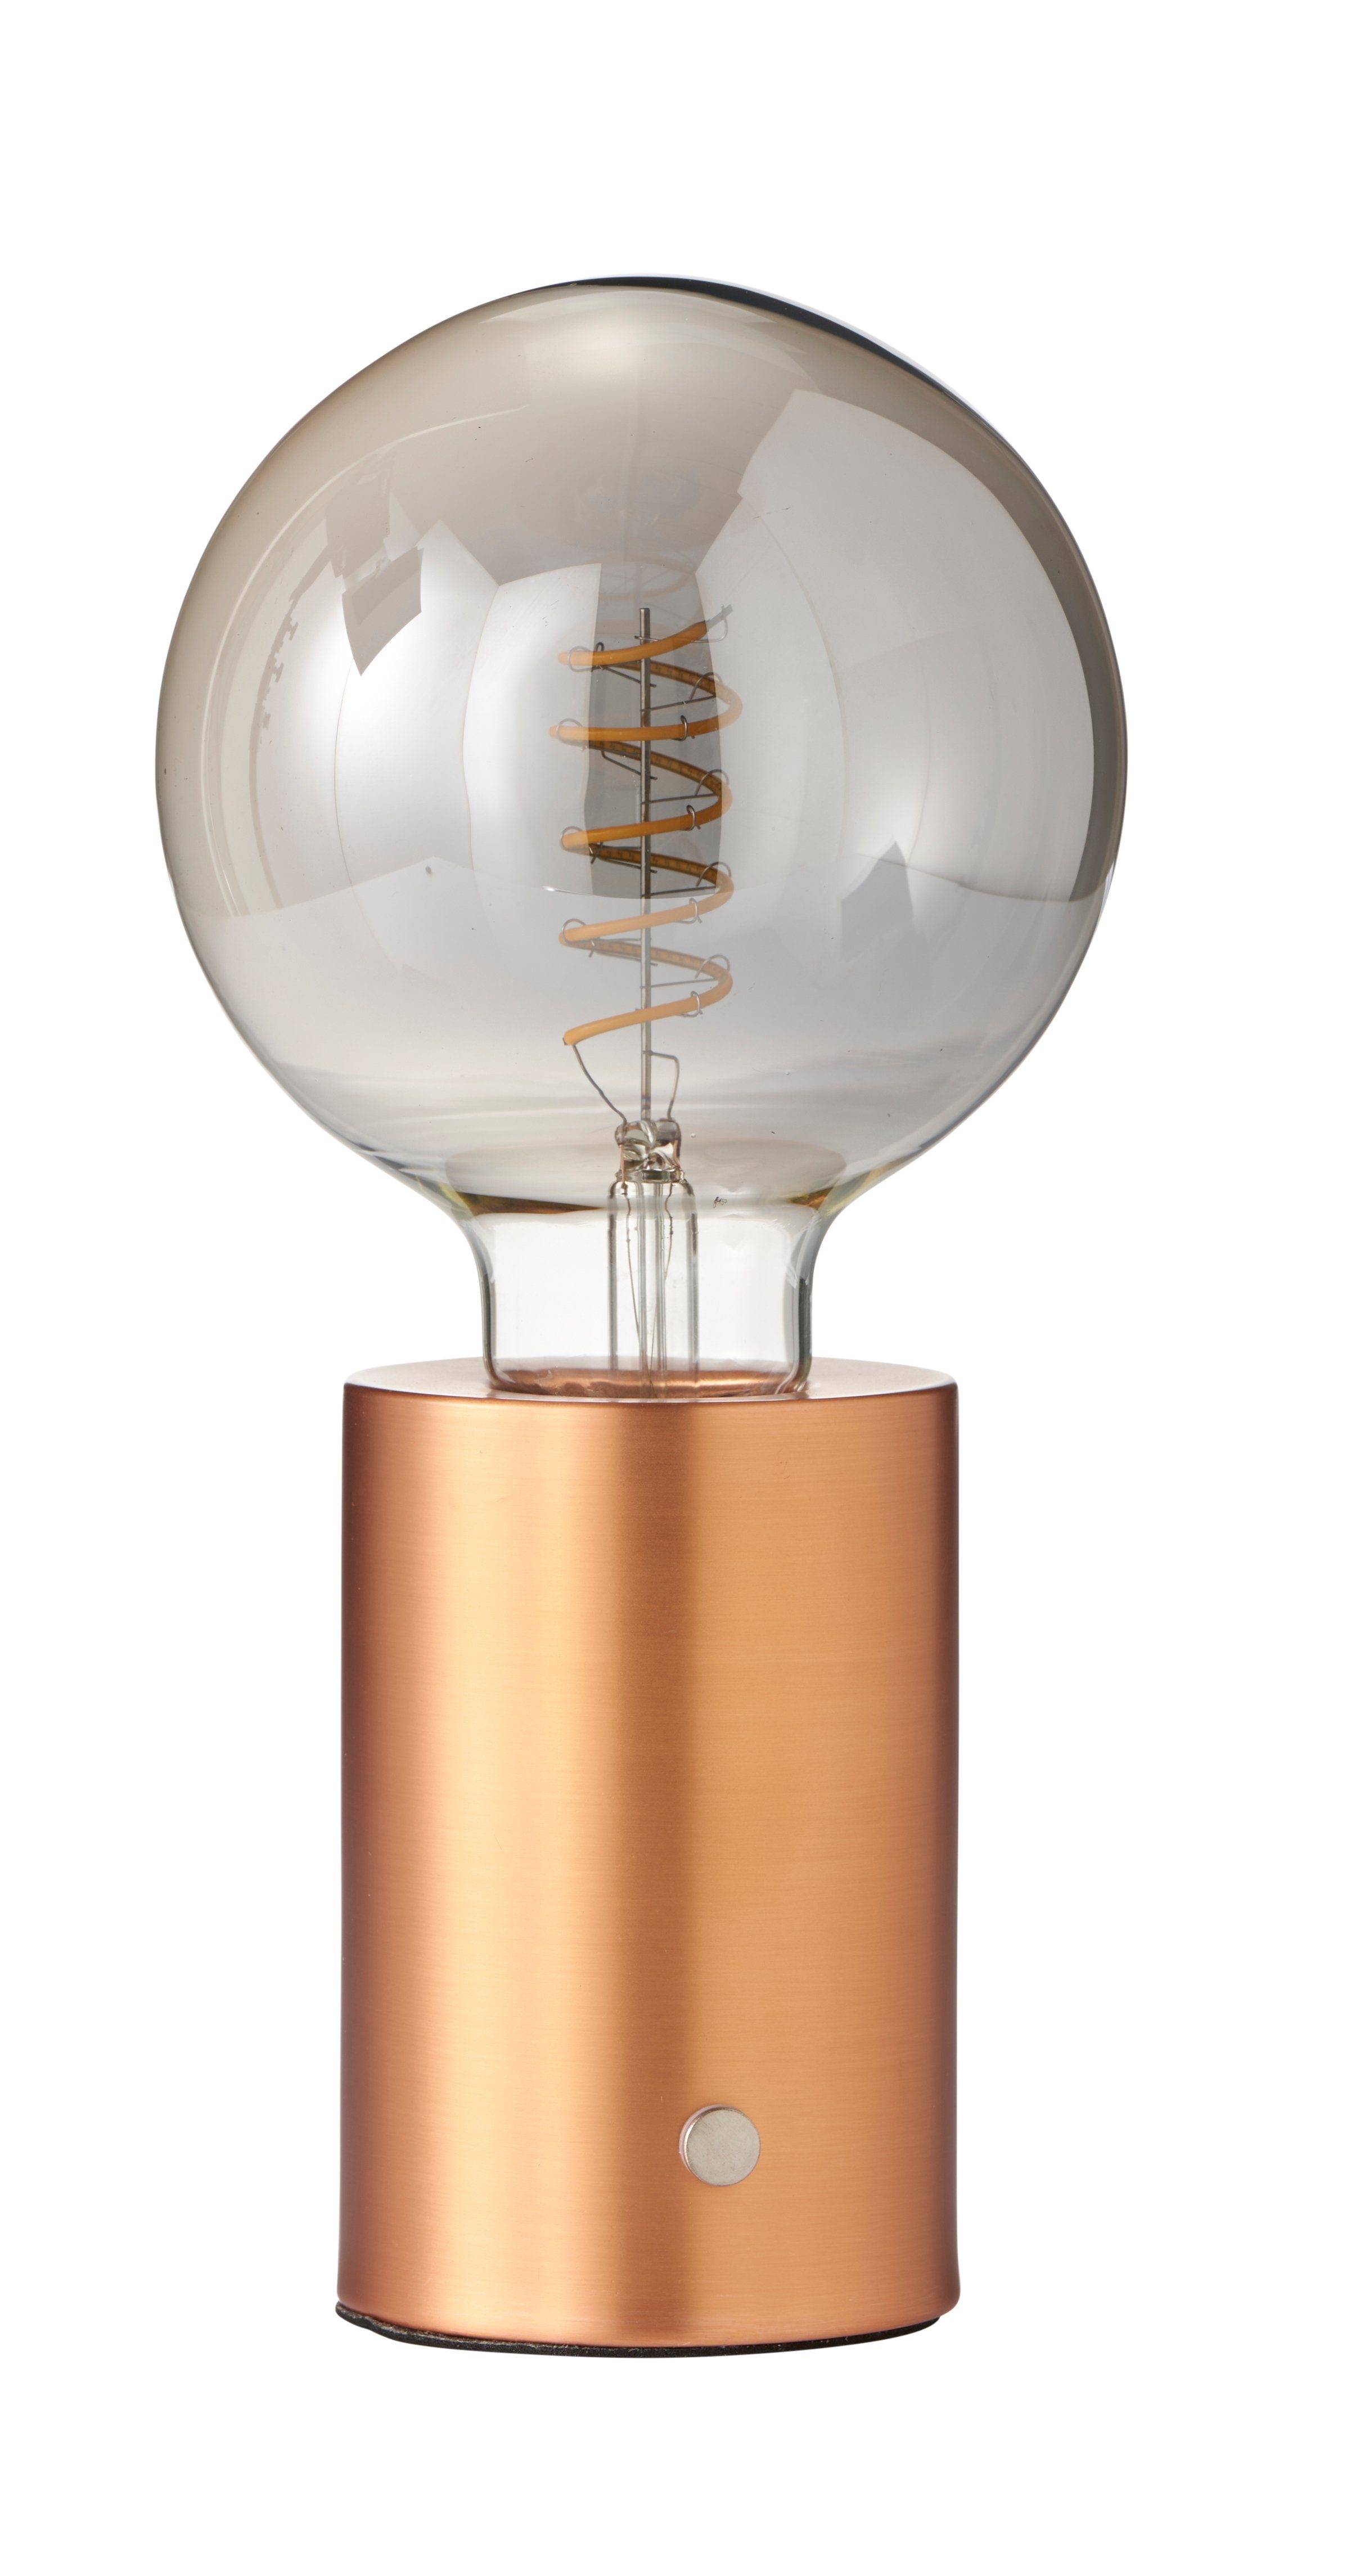 Northpoint Nachttischlampe LED Akku Tischlampe Tischleuchte Edison Glühbirne mit Glühdraht Roségold dunkle Birne